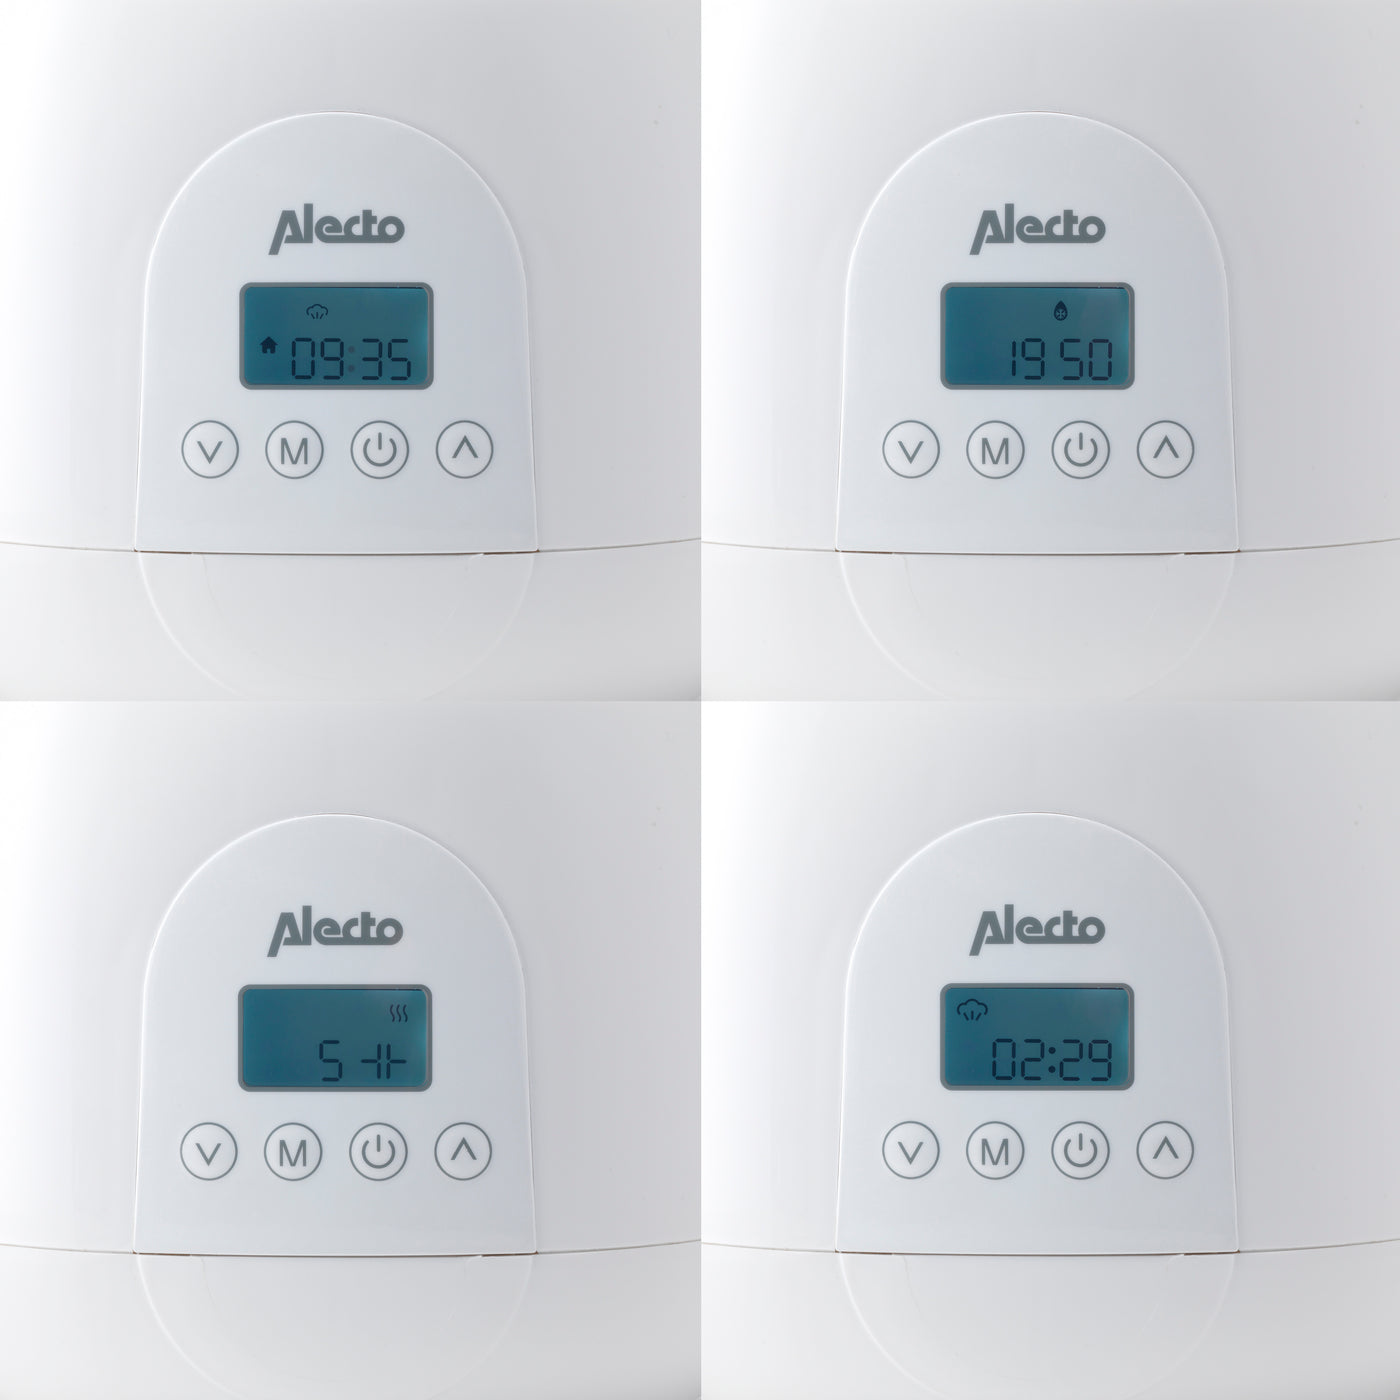 Alecto BW700TWIN - Chauffe-biberon digital duo rapide pour réchauffer, stériliser et décongeler, blanc